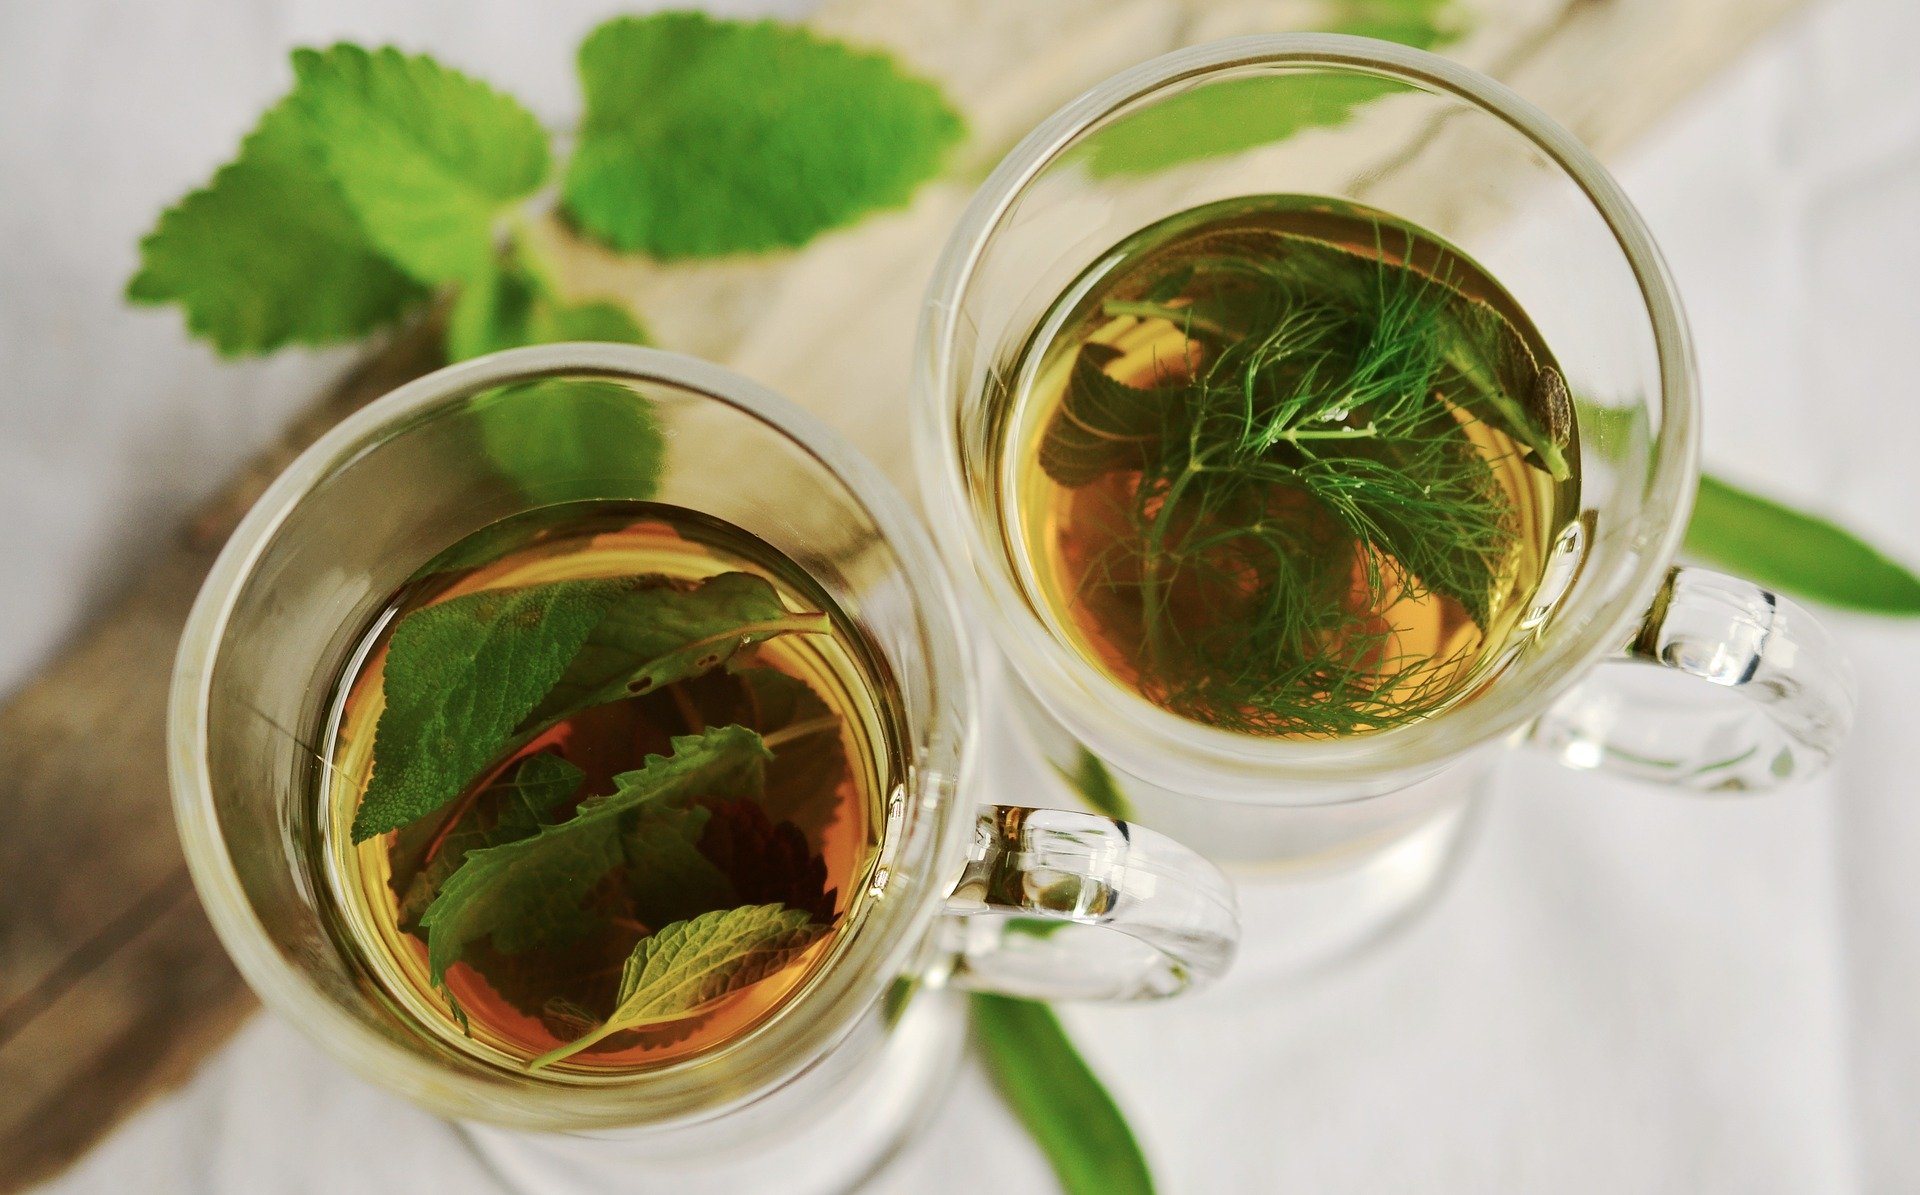 Viel grünen Tee mit frischer Minze trinken hilft gegen den Weihnachtskilo-Frust.